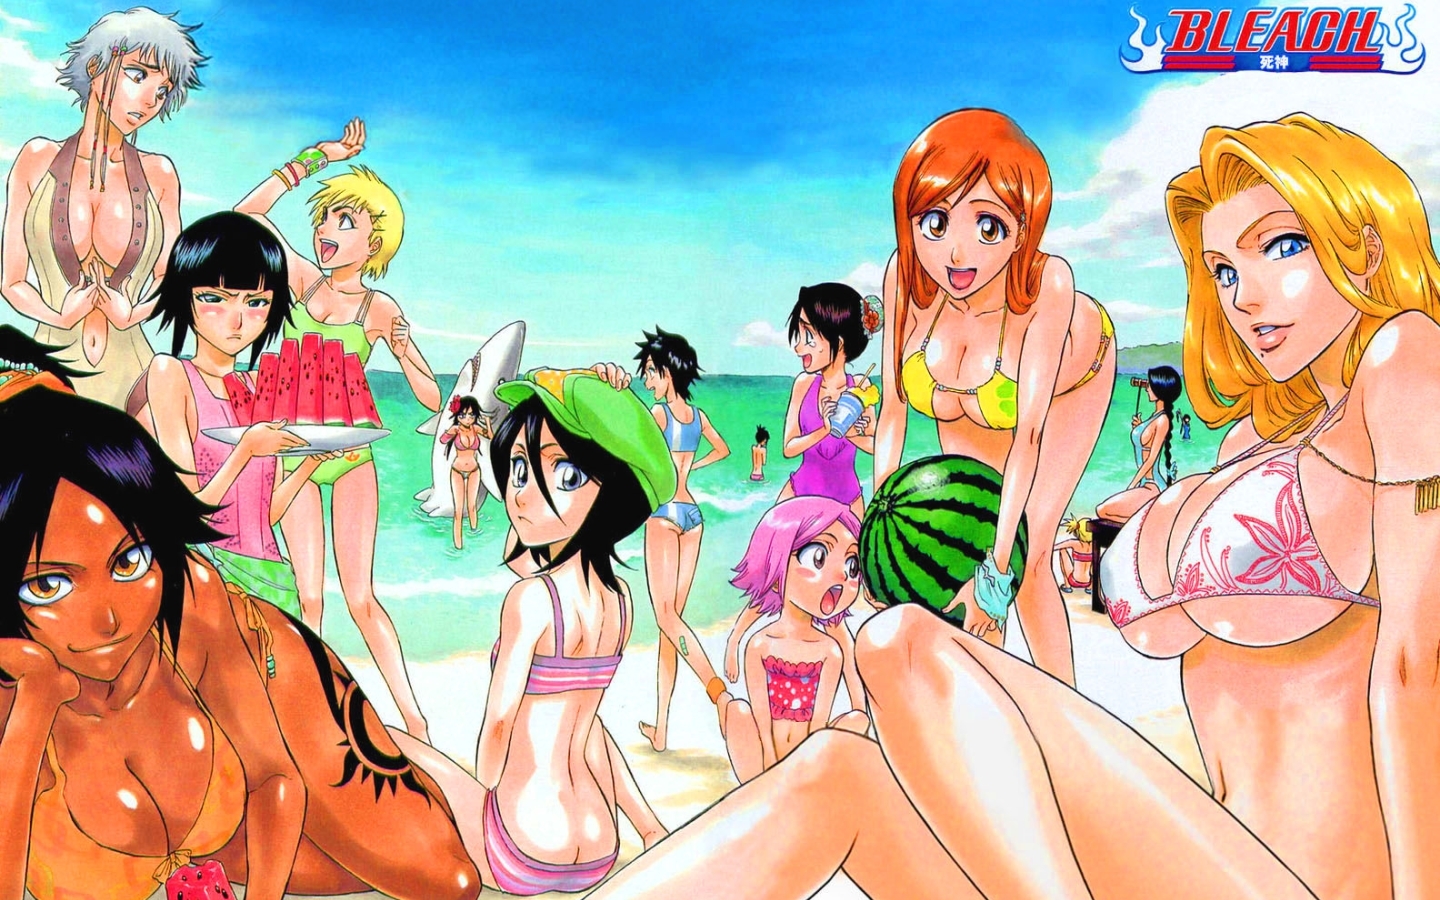 Anime 1440x900 Bleach anime anime girls big boobs beach ass boobs bikini Inoue Orihime Matsumoto Rangiku Shihouin Yoruichi Kuchiki Rukia Kotetsu Isane Kotetsu Kiyone Sui-Feng Unohana Retsu Momo Hinamori group of women women on beach watermelons